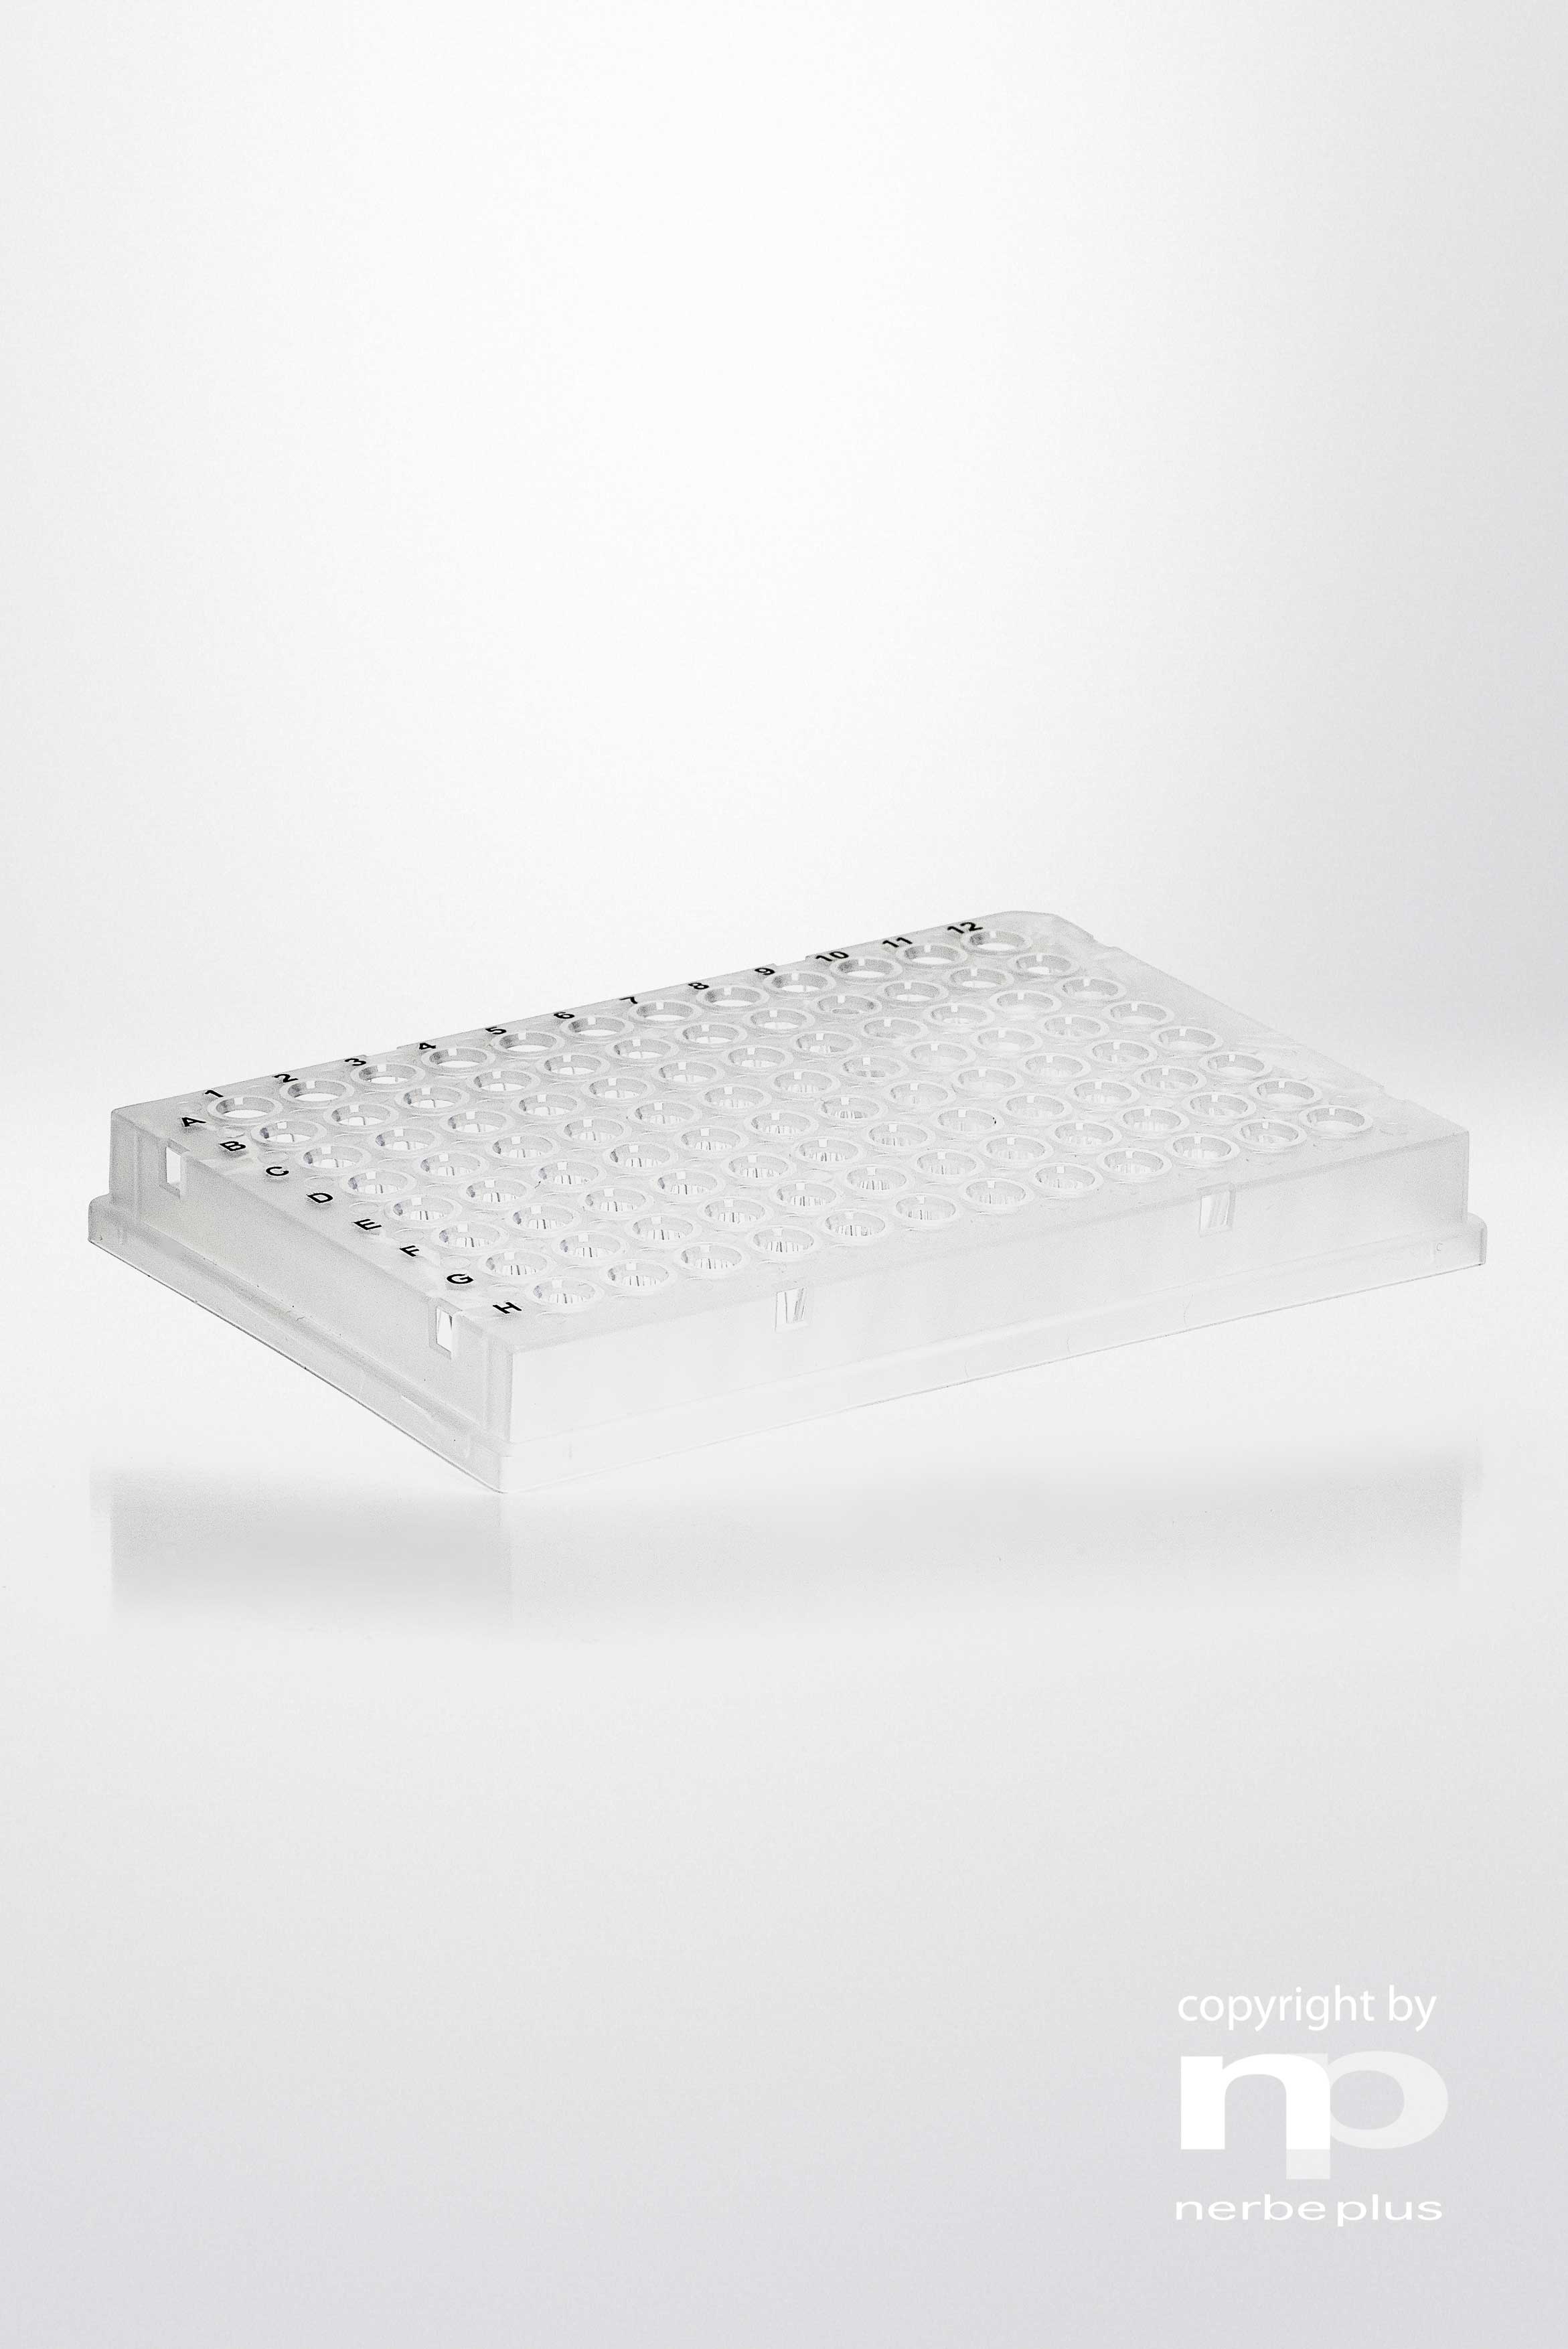 Placas para PCR. NERBE-PLUS. Capacidad: 96x0,2 ml. Tipo: Con faldón. Resist. centrif (g): 6000. Color: Transparente. Esterilidad: PCR Ready. Low profile: Sí. qPCR: Sí